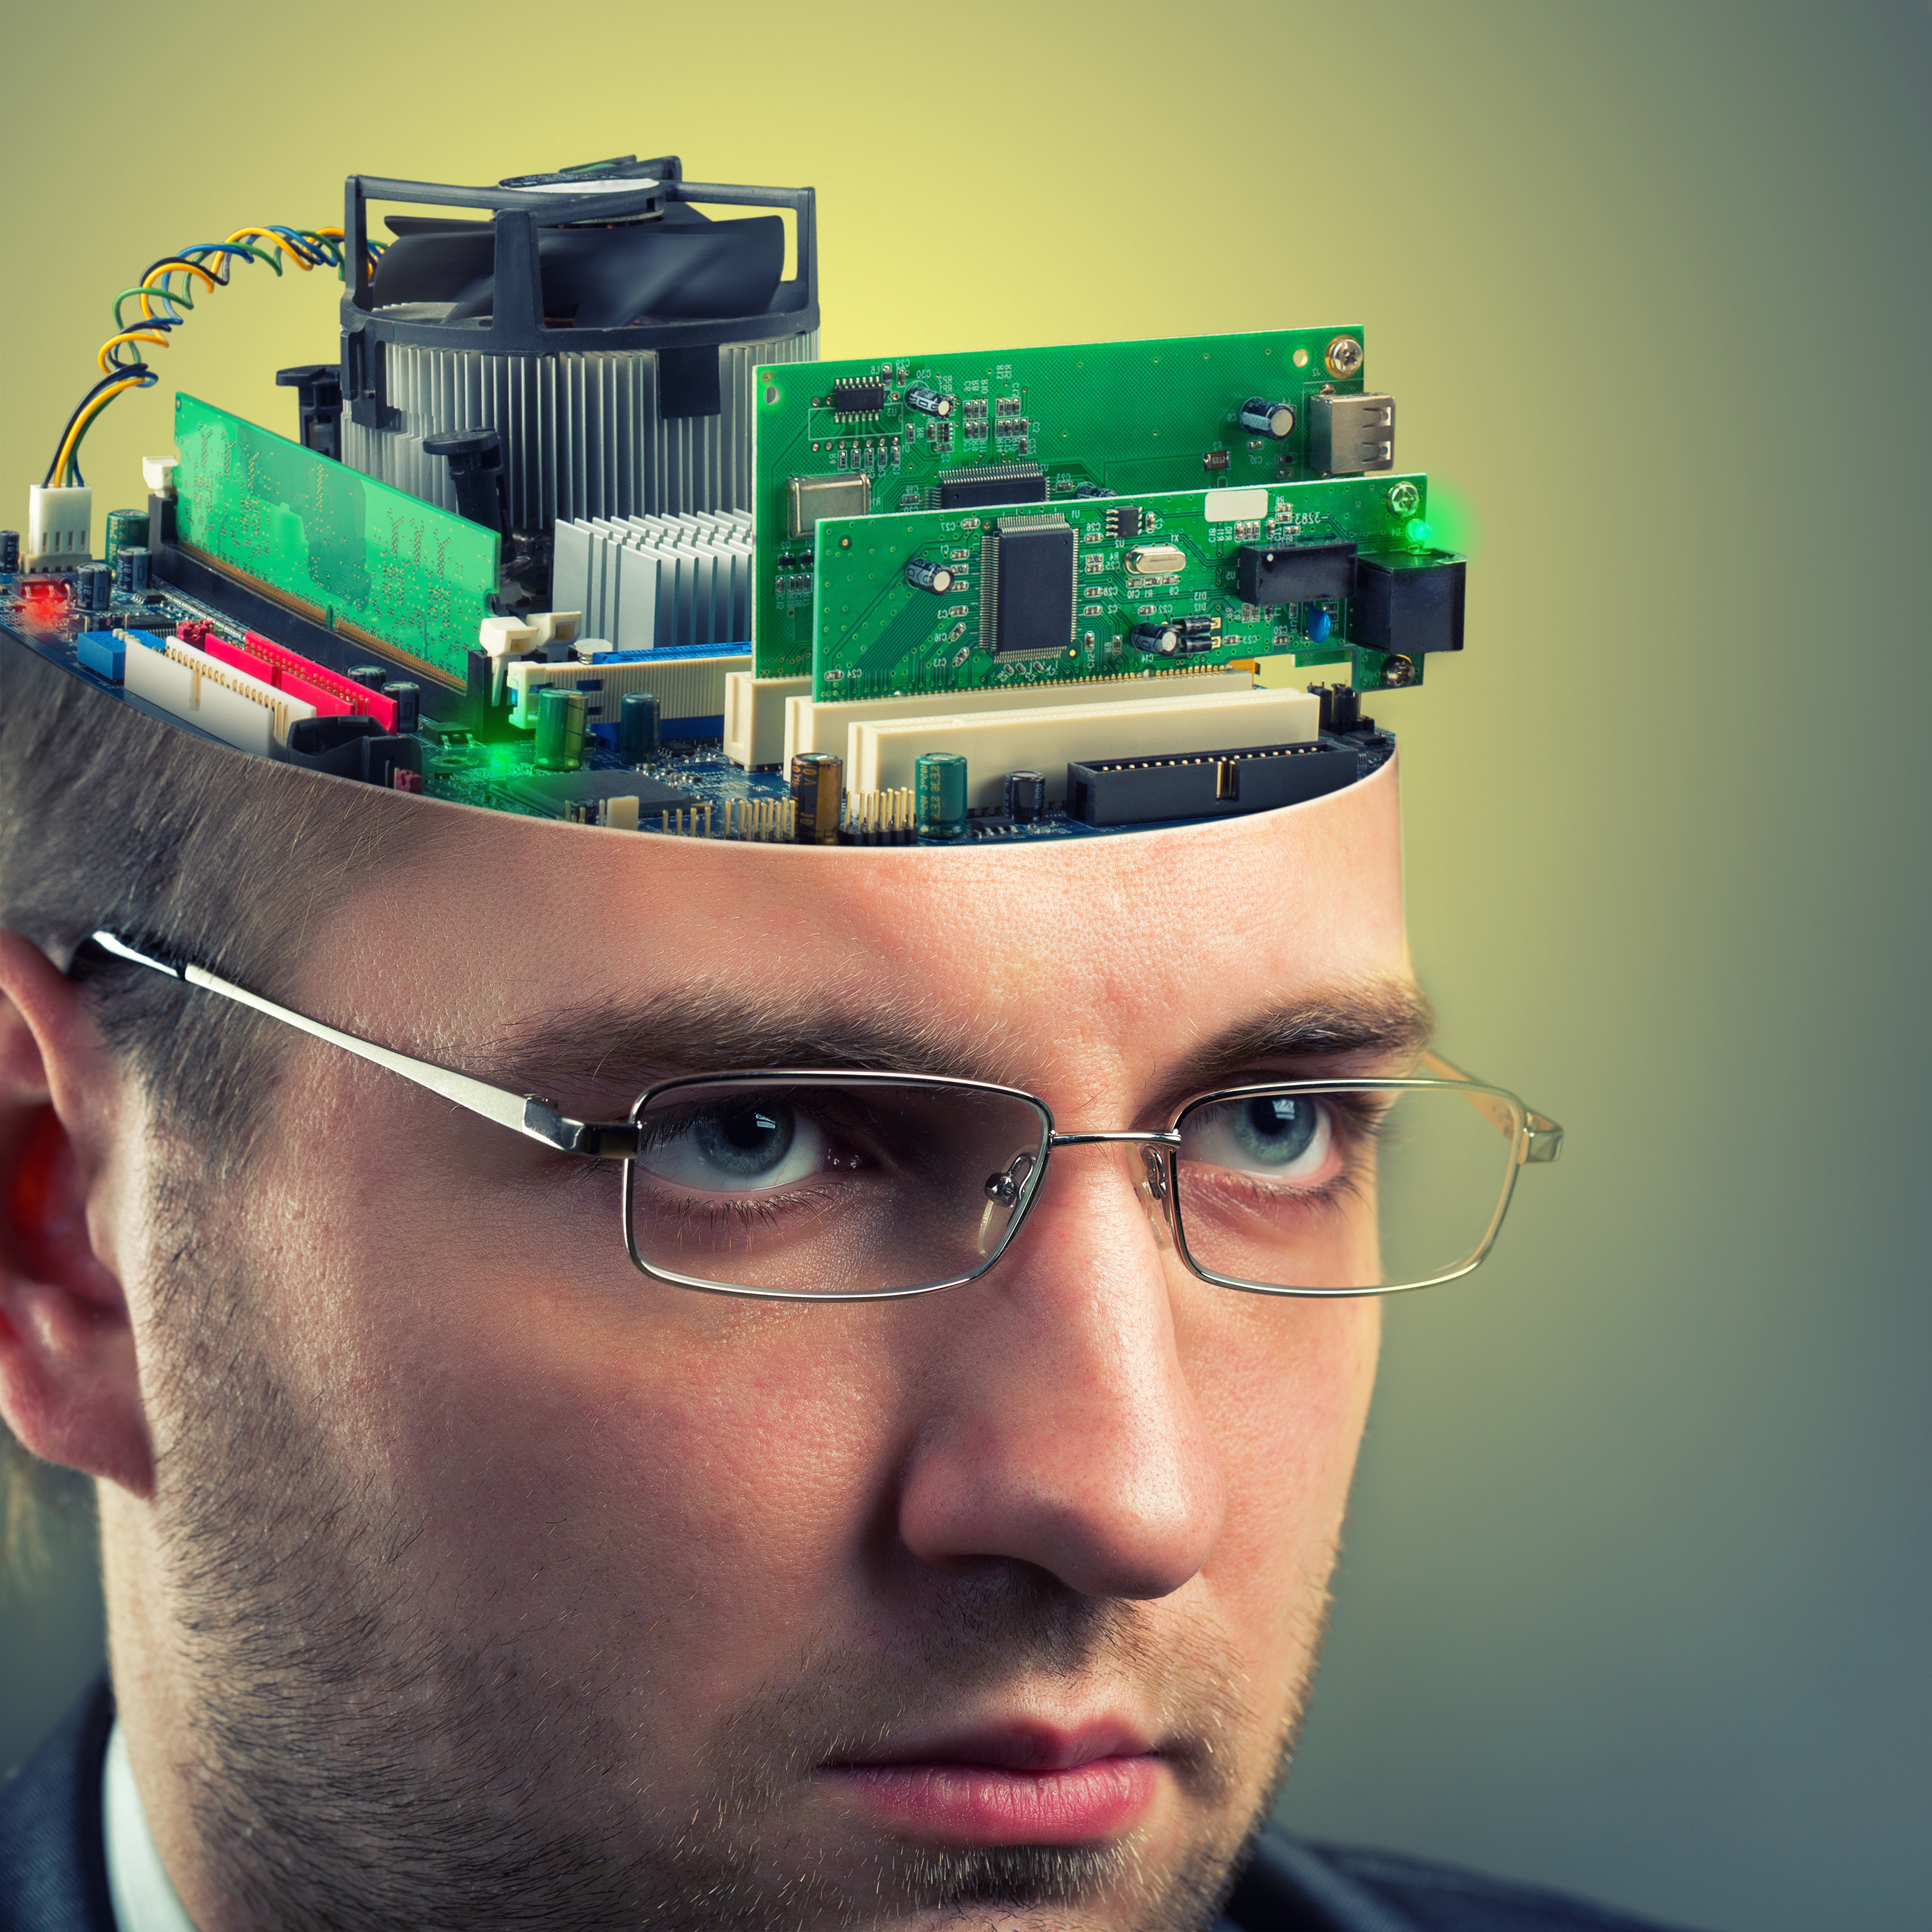 Оперативная память человека это. Голова компьютер. Процессор в голове. Память человека. Умный мозг.